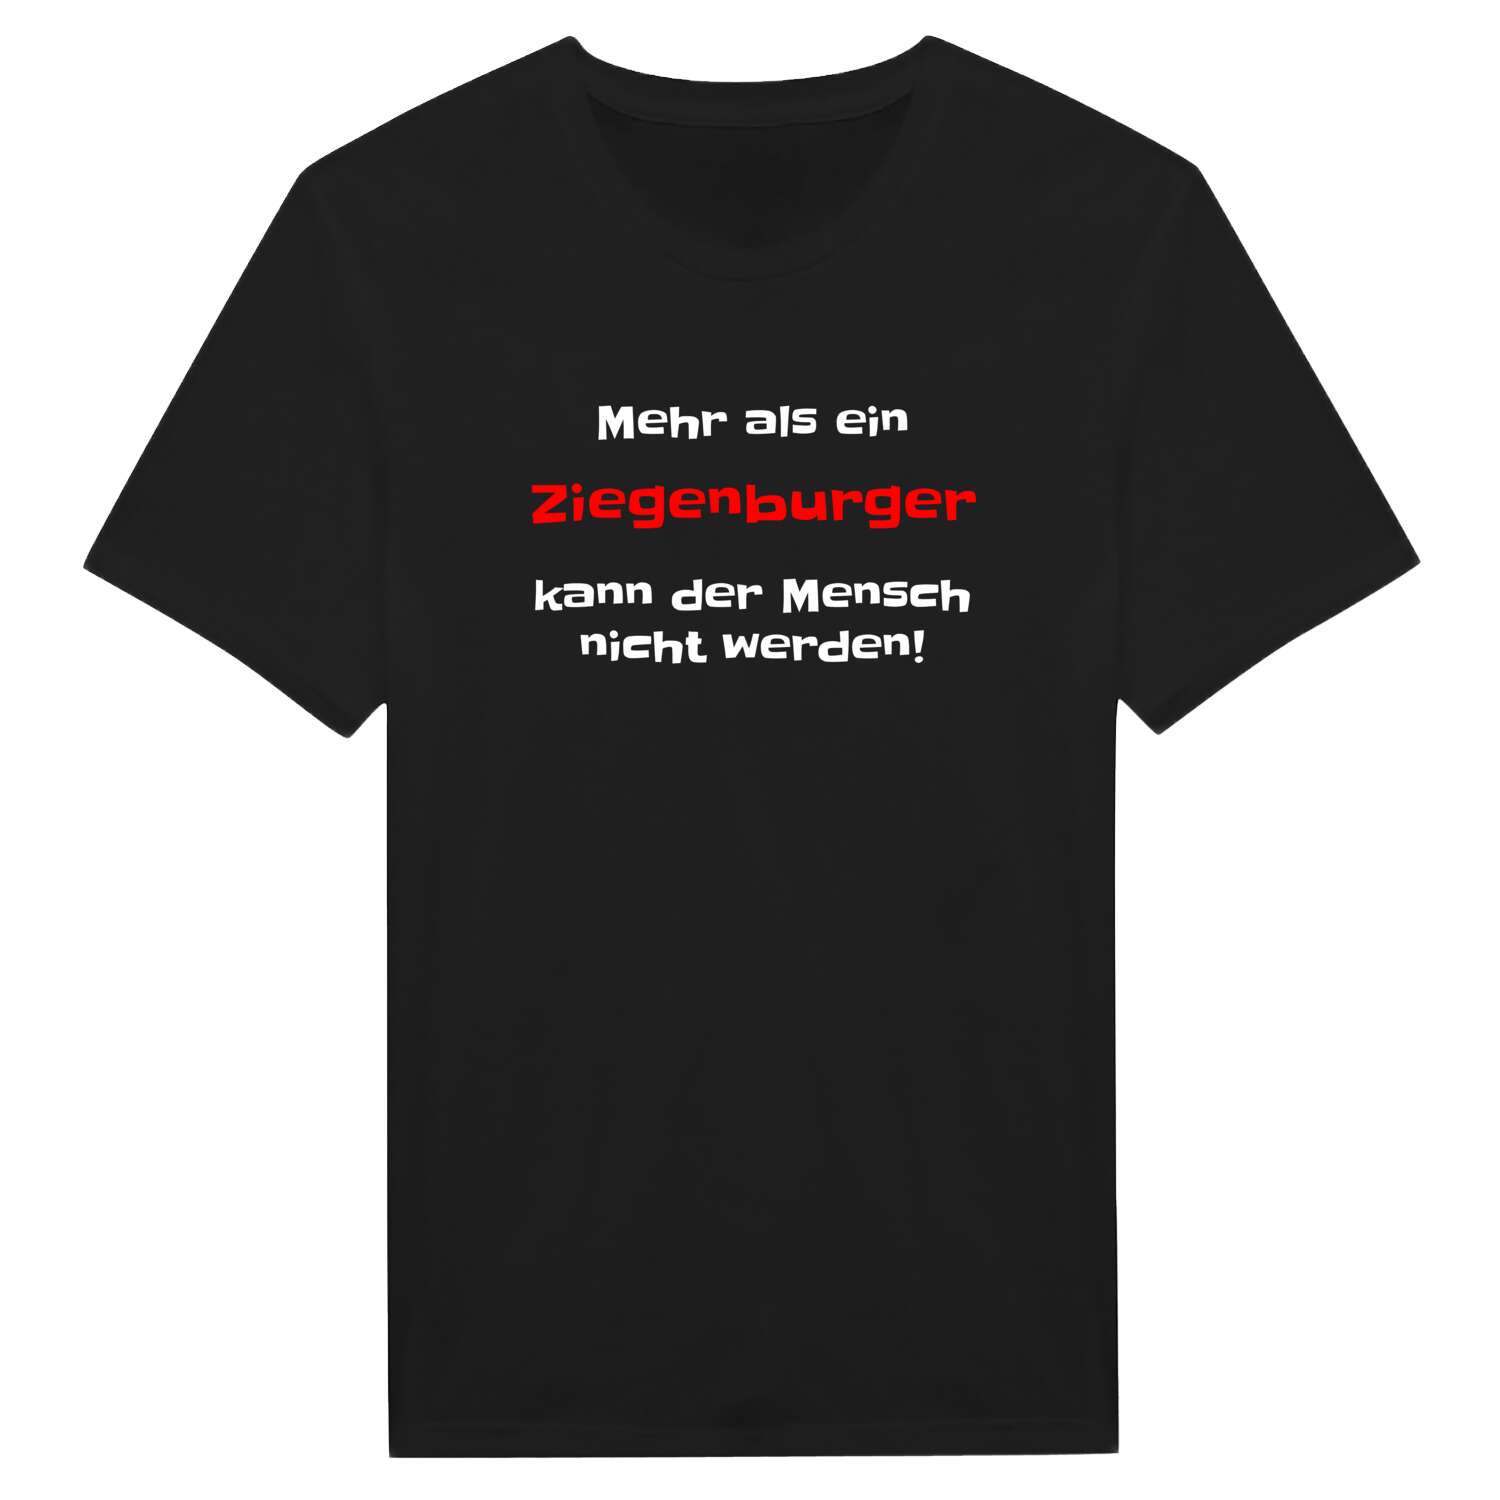 Ziegenburg T-Shirt »Mehr als ein«